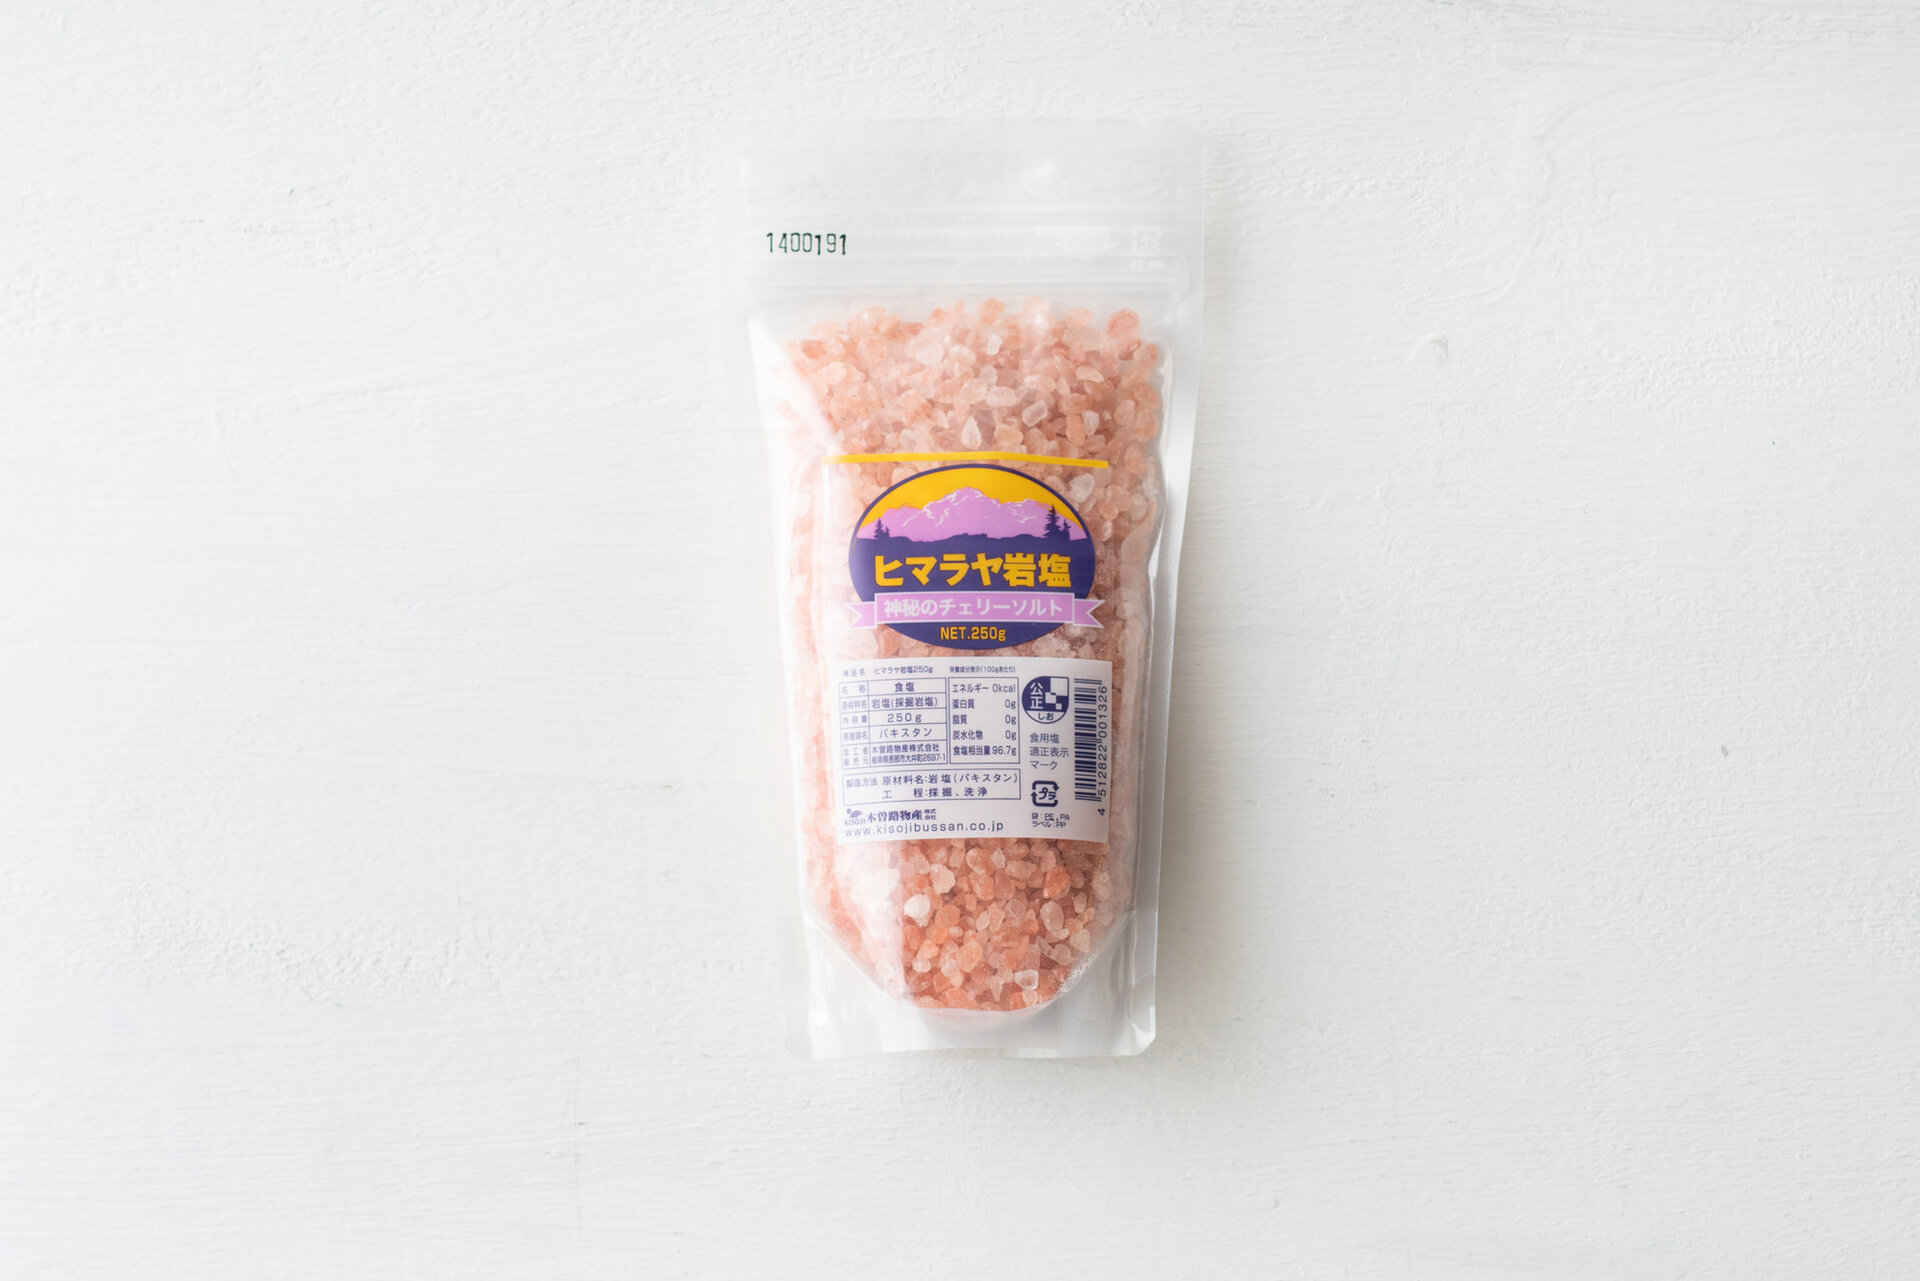 ヒマラヤ岩塩250g - パンと日用品の店 わざわざ(パントニチヨウヒンノミセ ワザワザ) | キナリノモール